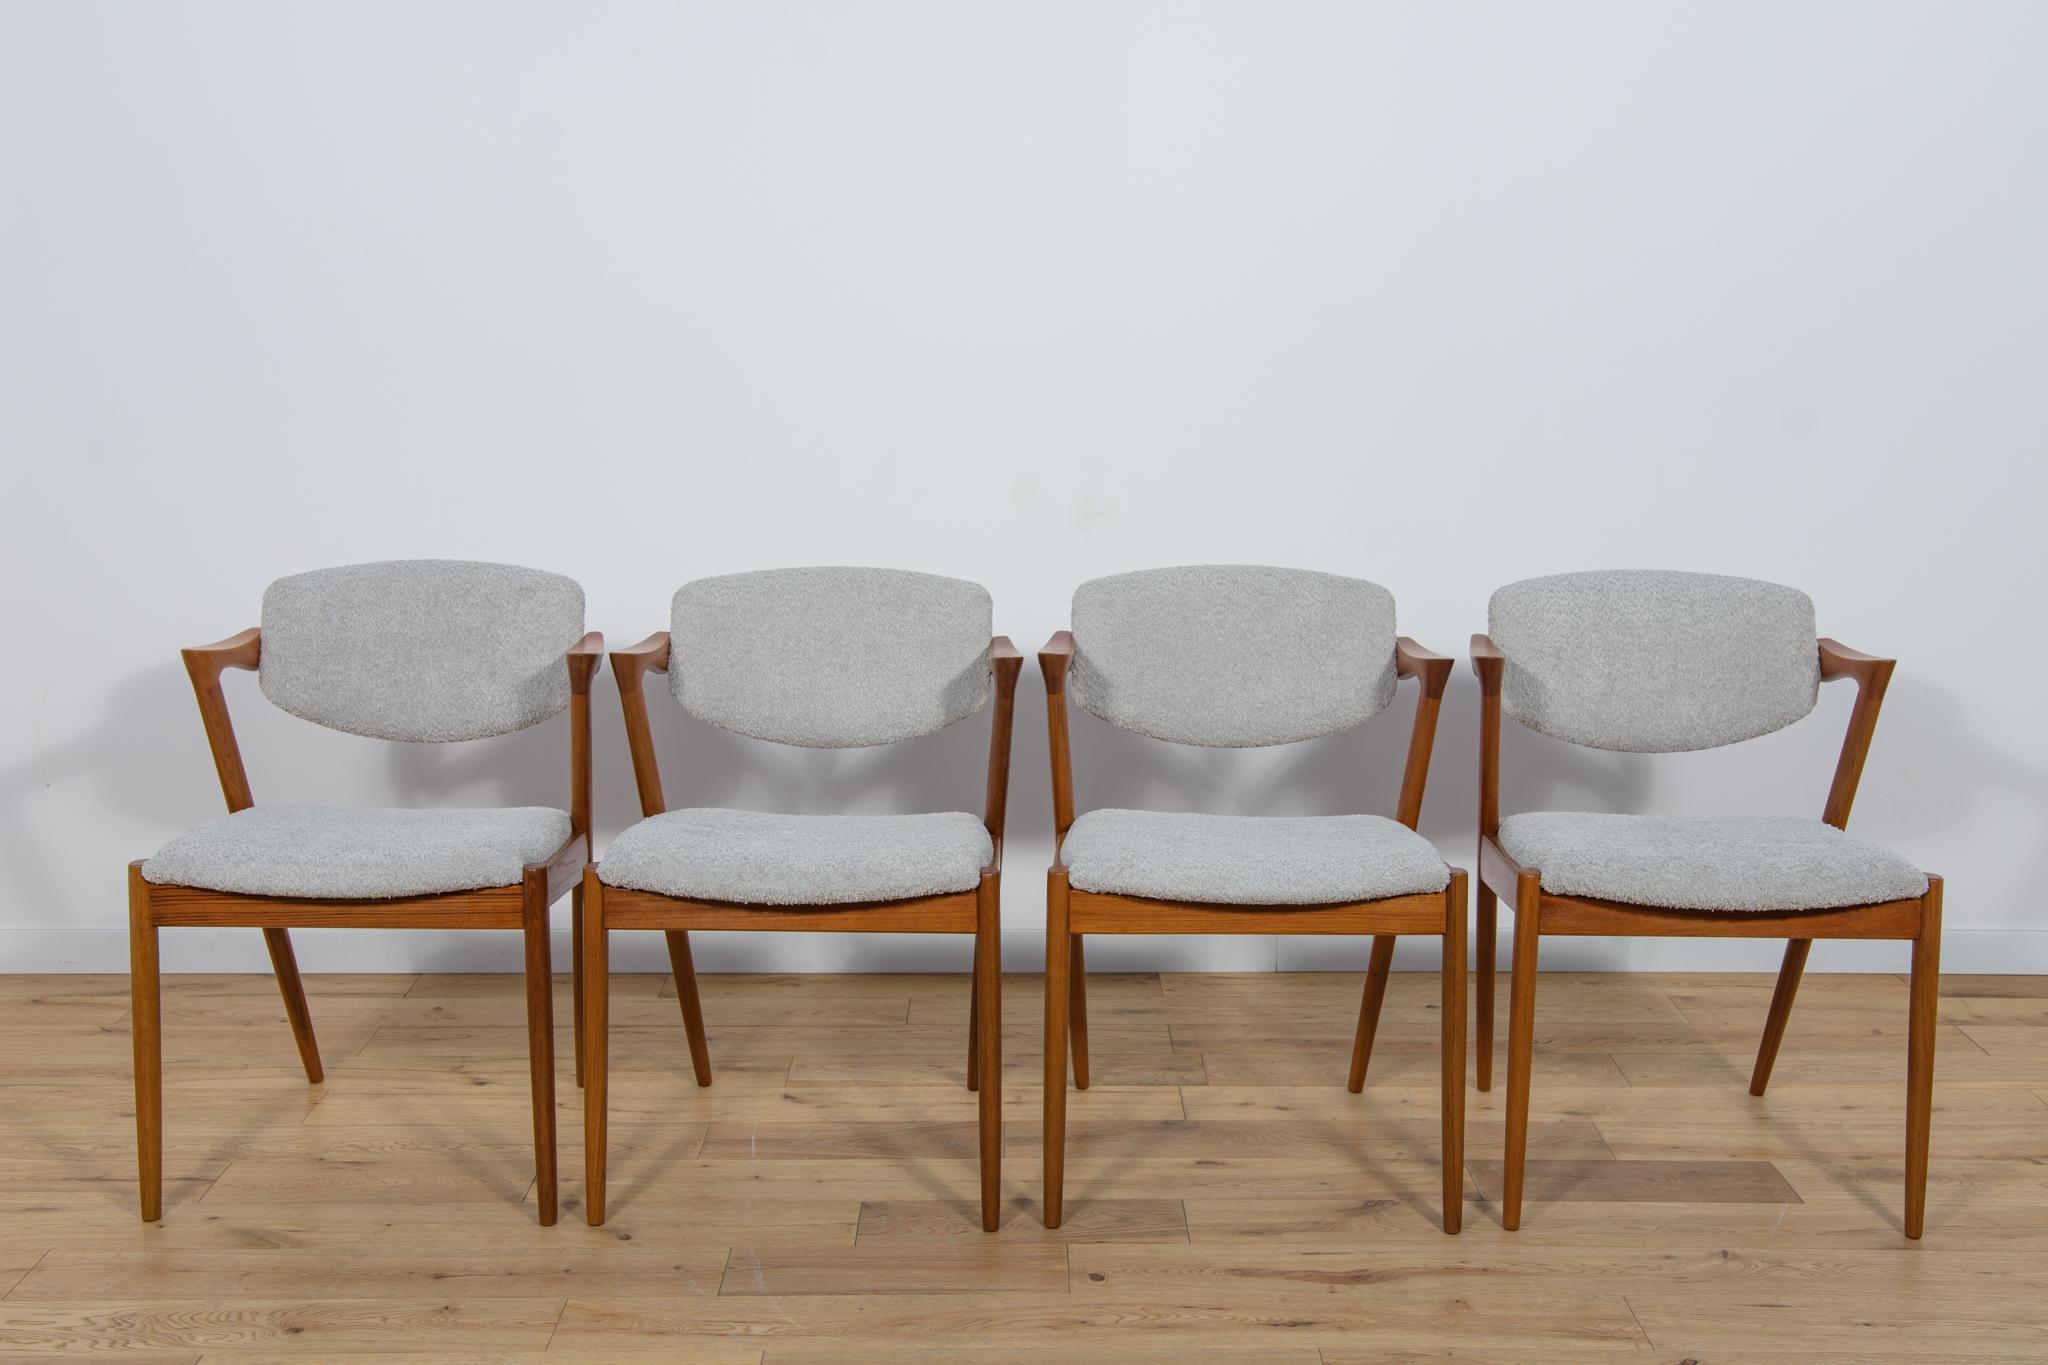 
Ein Satz von vier Stühlen Modell 42, entworfen von Kai Kristiansen für die dänische Schou-Andersens Møbelfabrik in den 1960er Jahren. Gestell aus Teakholz. Vollständig restauriert. Das Holz wurde vom alten Anstrich befreit und mit hochwertigem